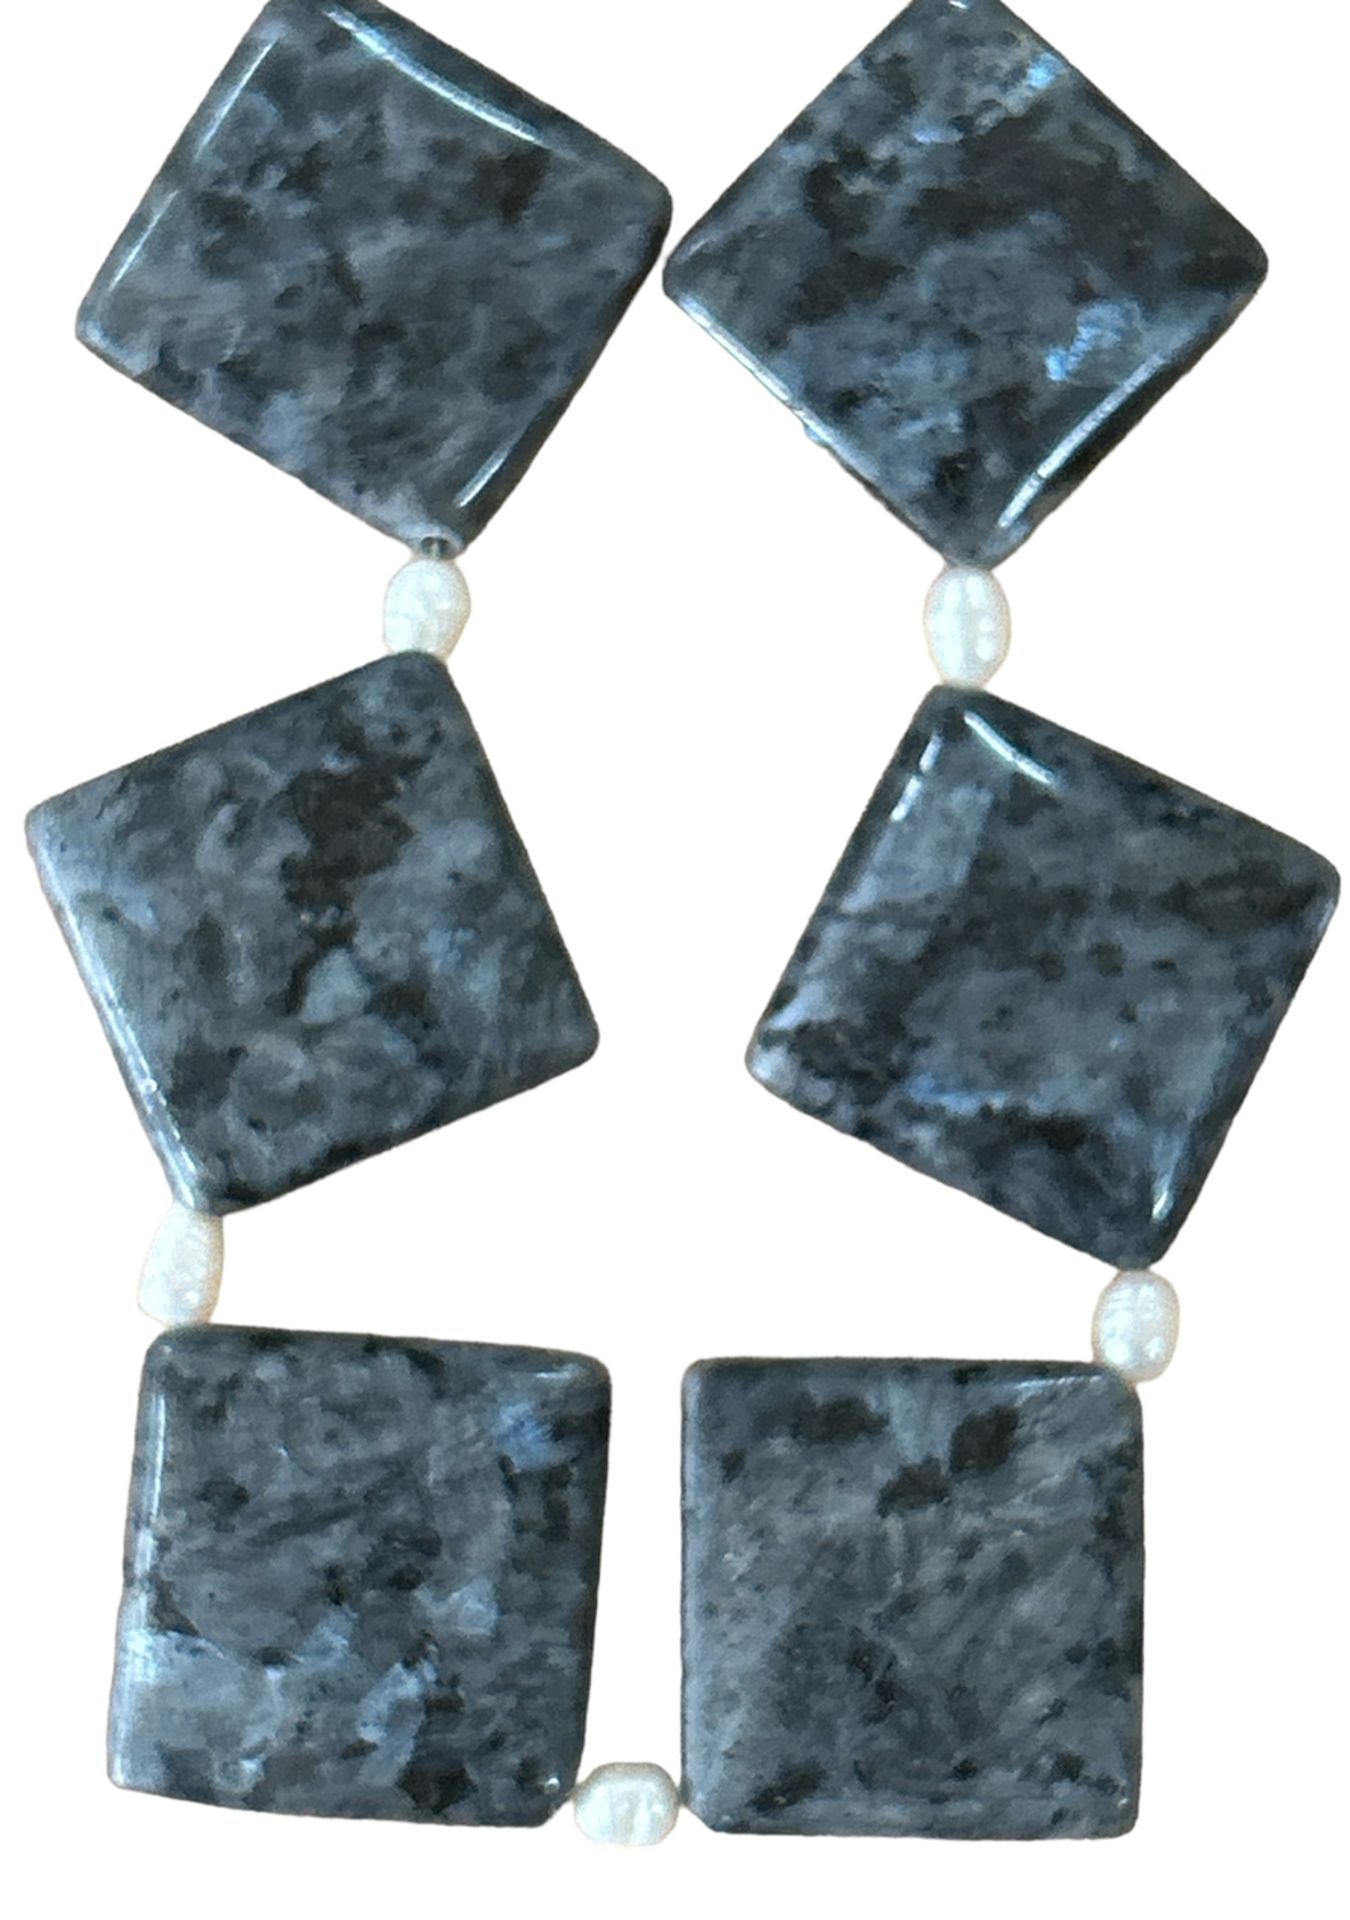 Halskette mit grossen, marmorierten grünen Steinen und Flussperlchen, L-54 cm, ca. 175 gr. - Bild 2 aus 2